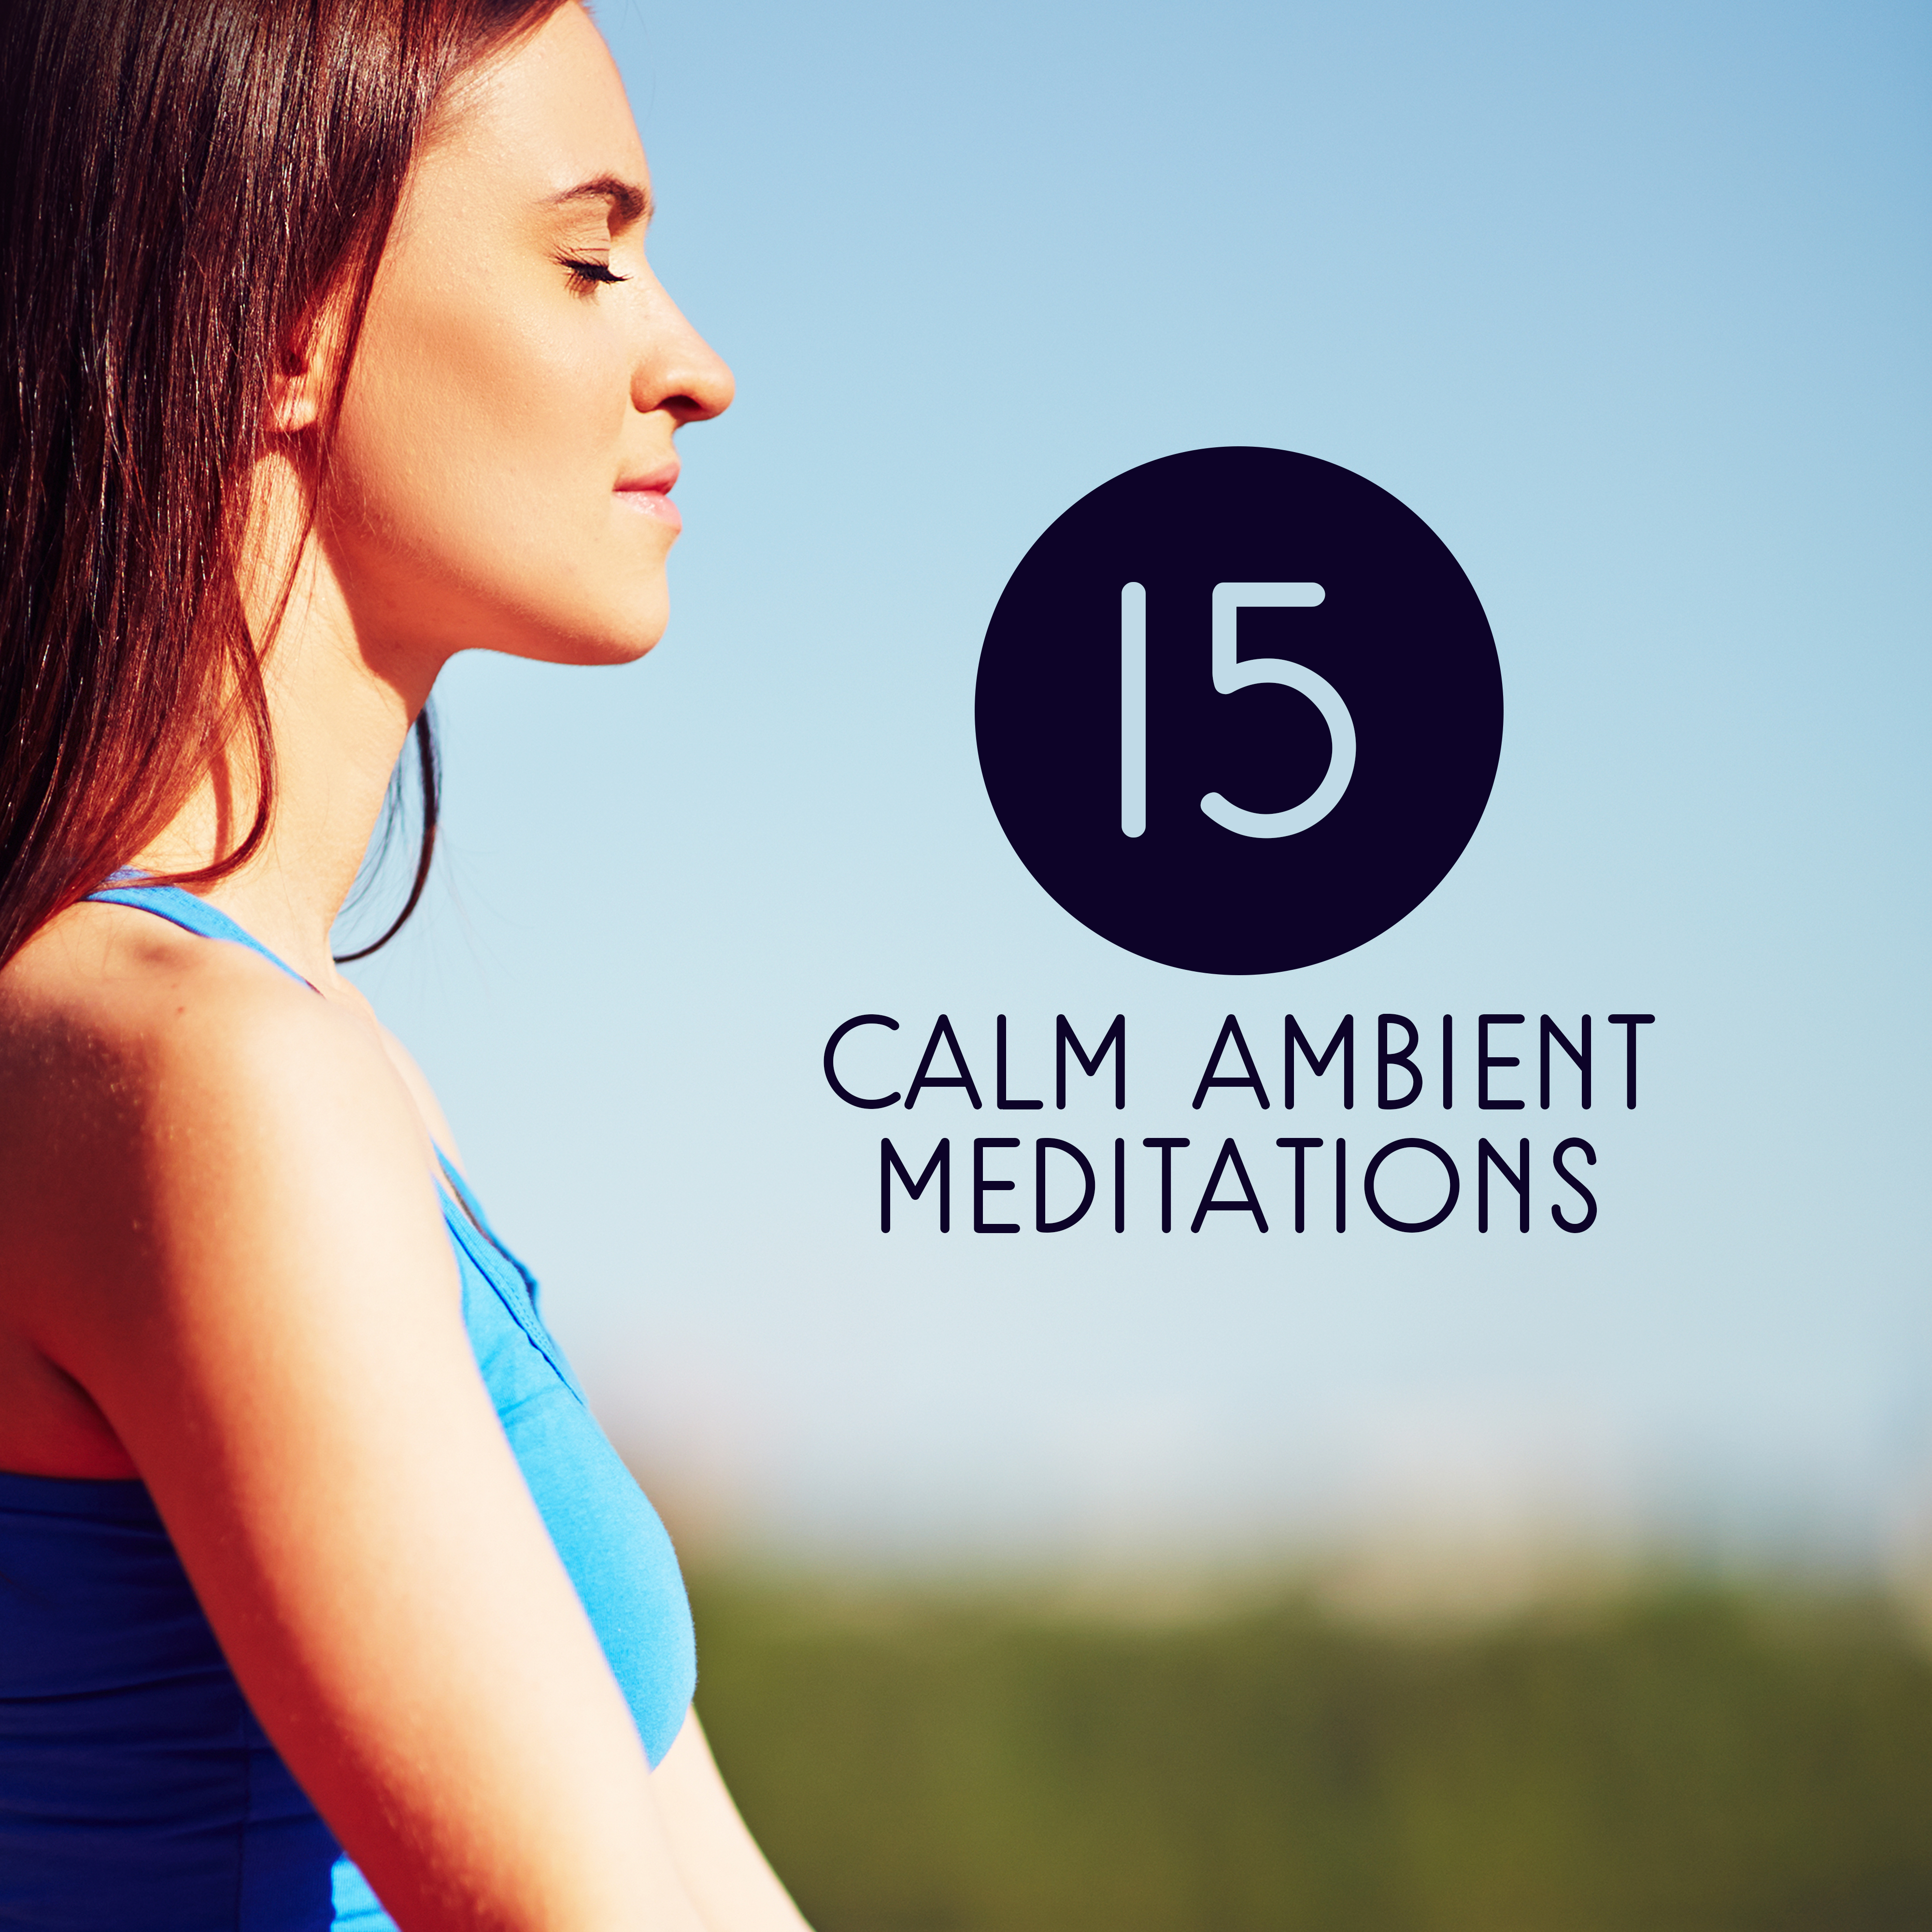 15 Calm Ambient Meditations